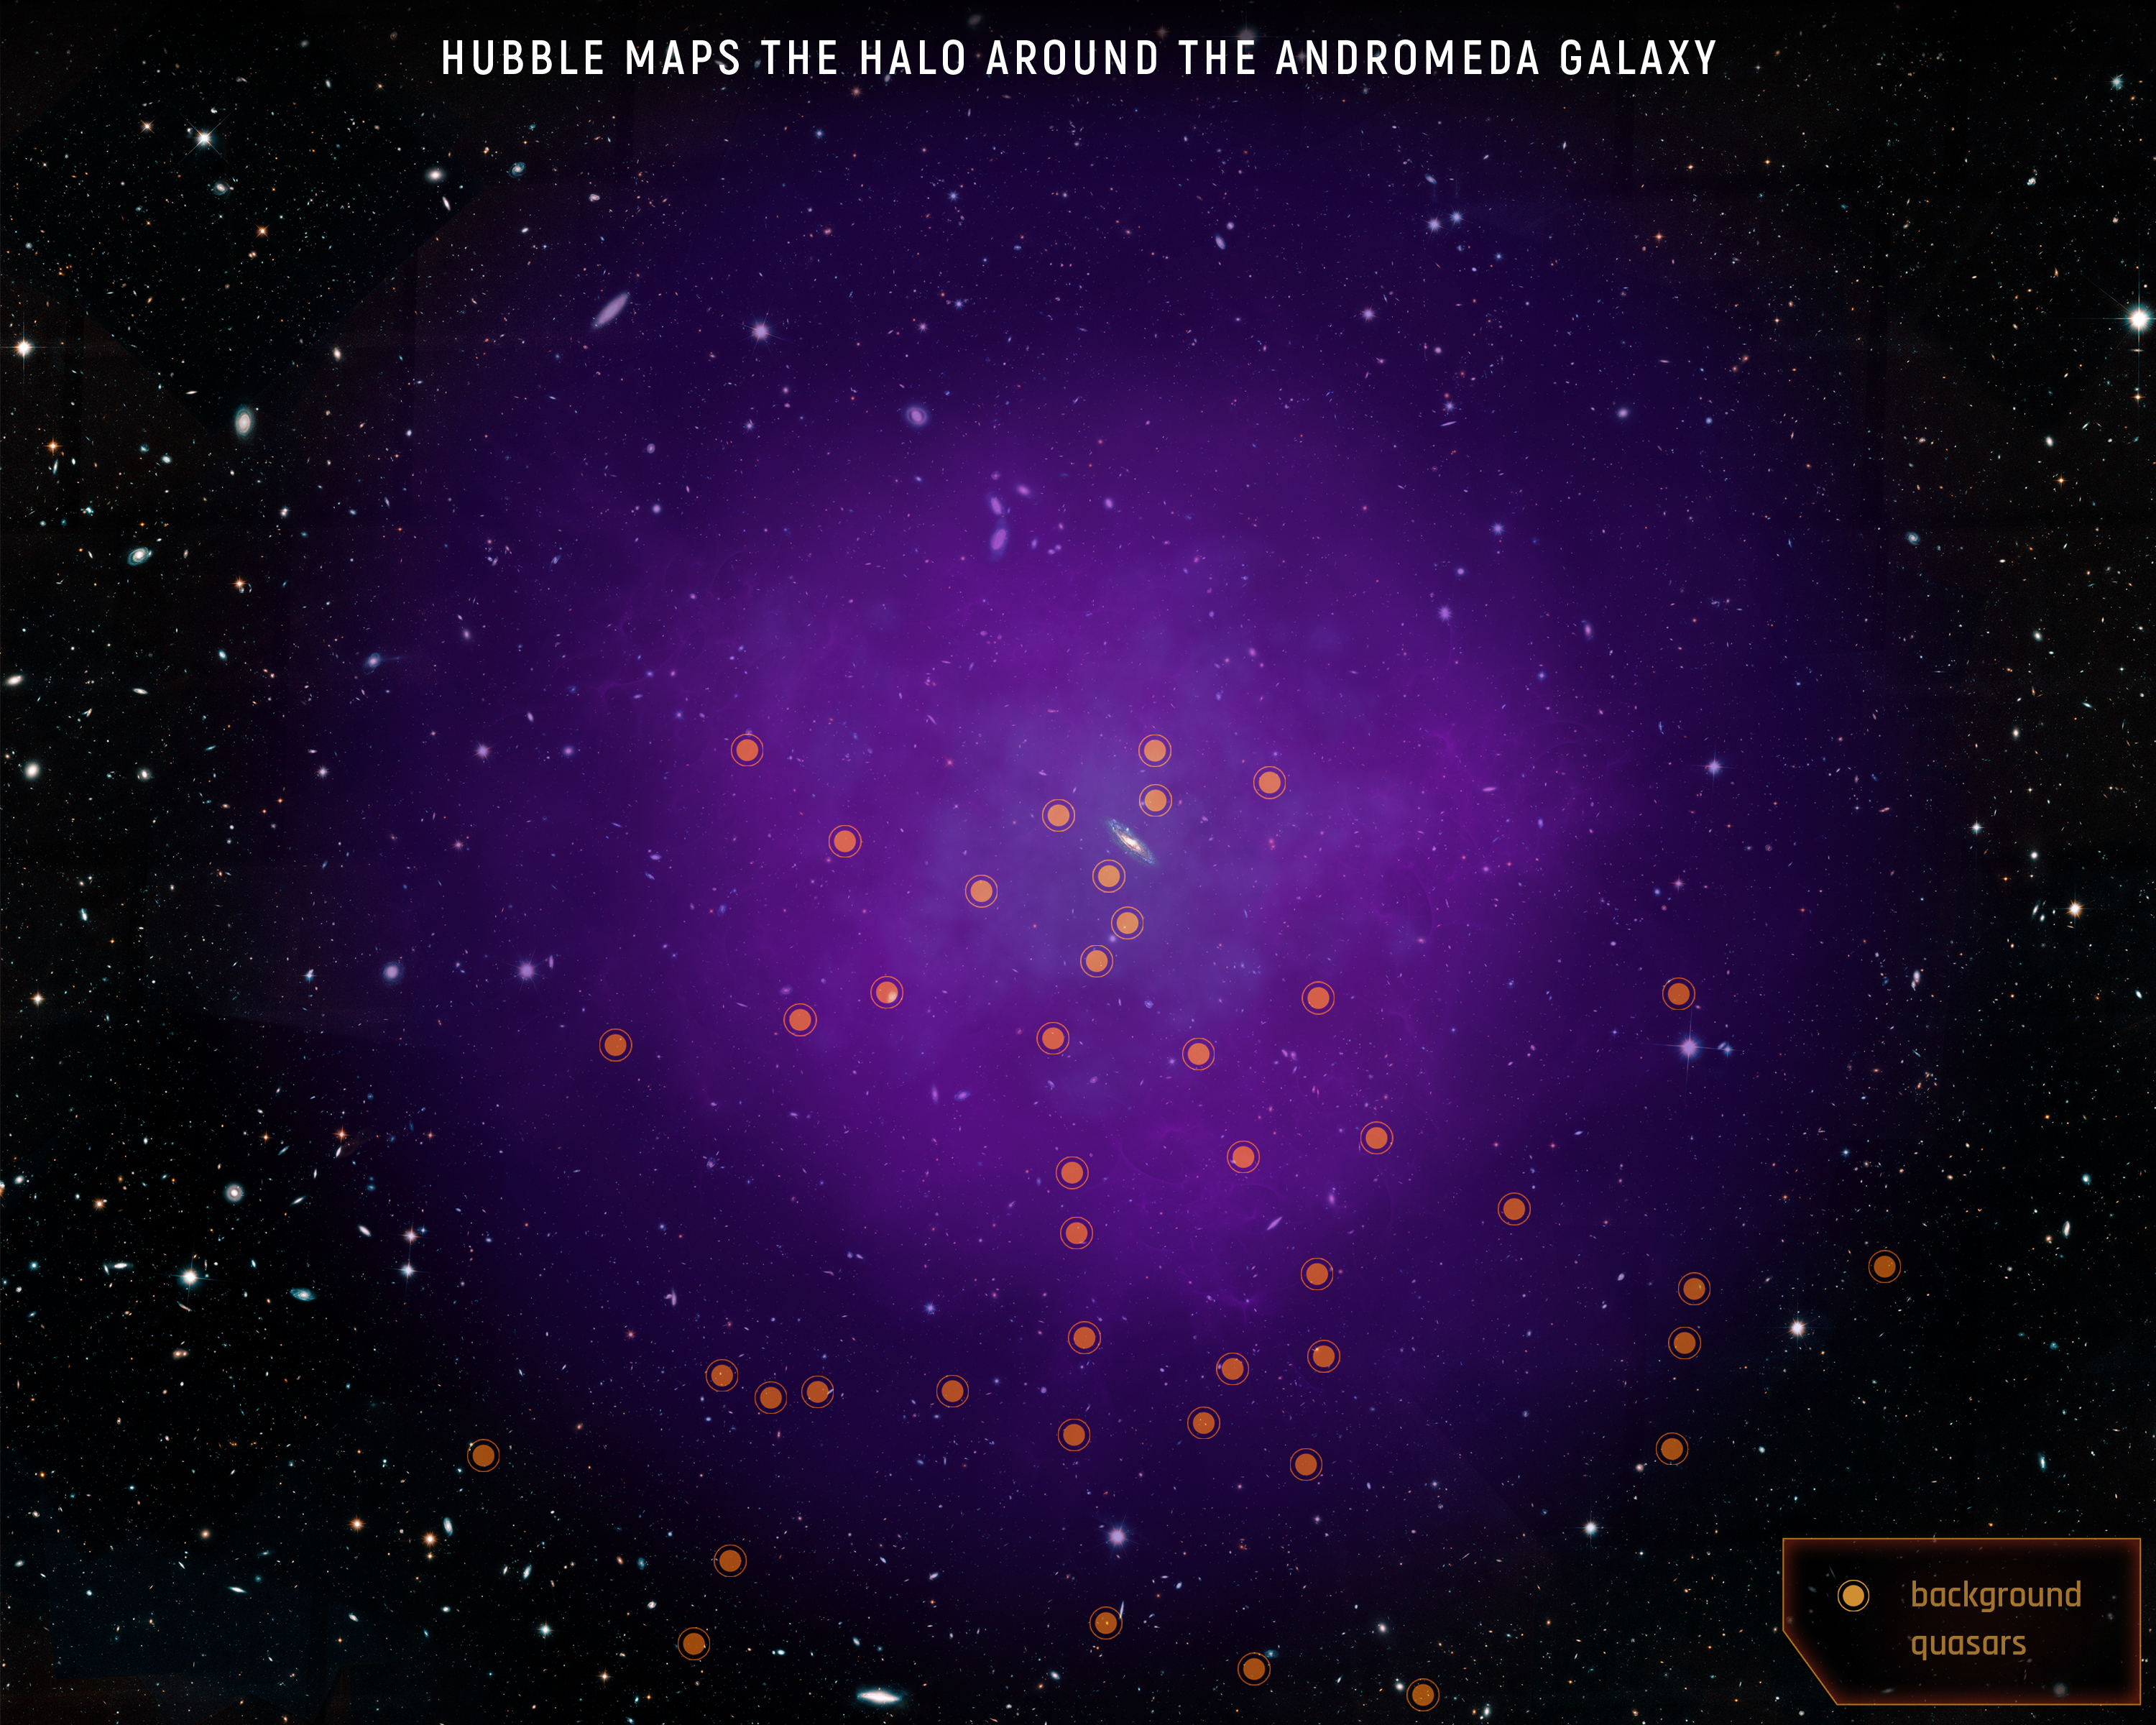 Rysunek pokazuje pozycję 43 kwazarów, które wykorzystali astronomowie by zbadać halo gazowe galaktyki w Andromedzie. Śledząc pochłanianie światła pochodzącego od kwazarów świecących w tle, naukowcy są w stanie sondować materię w halo. Źródło: NASA, ESA, and E. Wheatley (STScI).